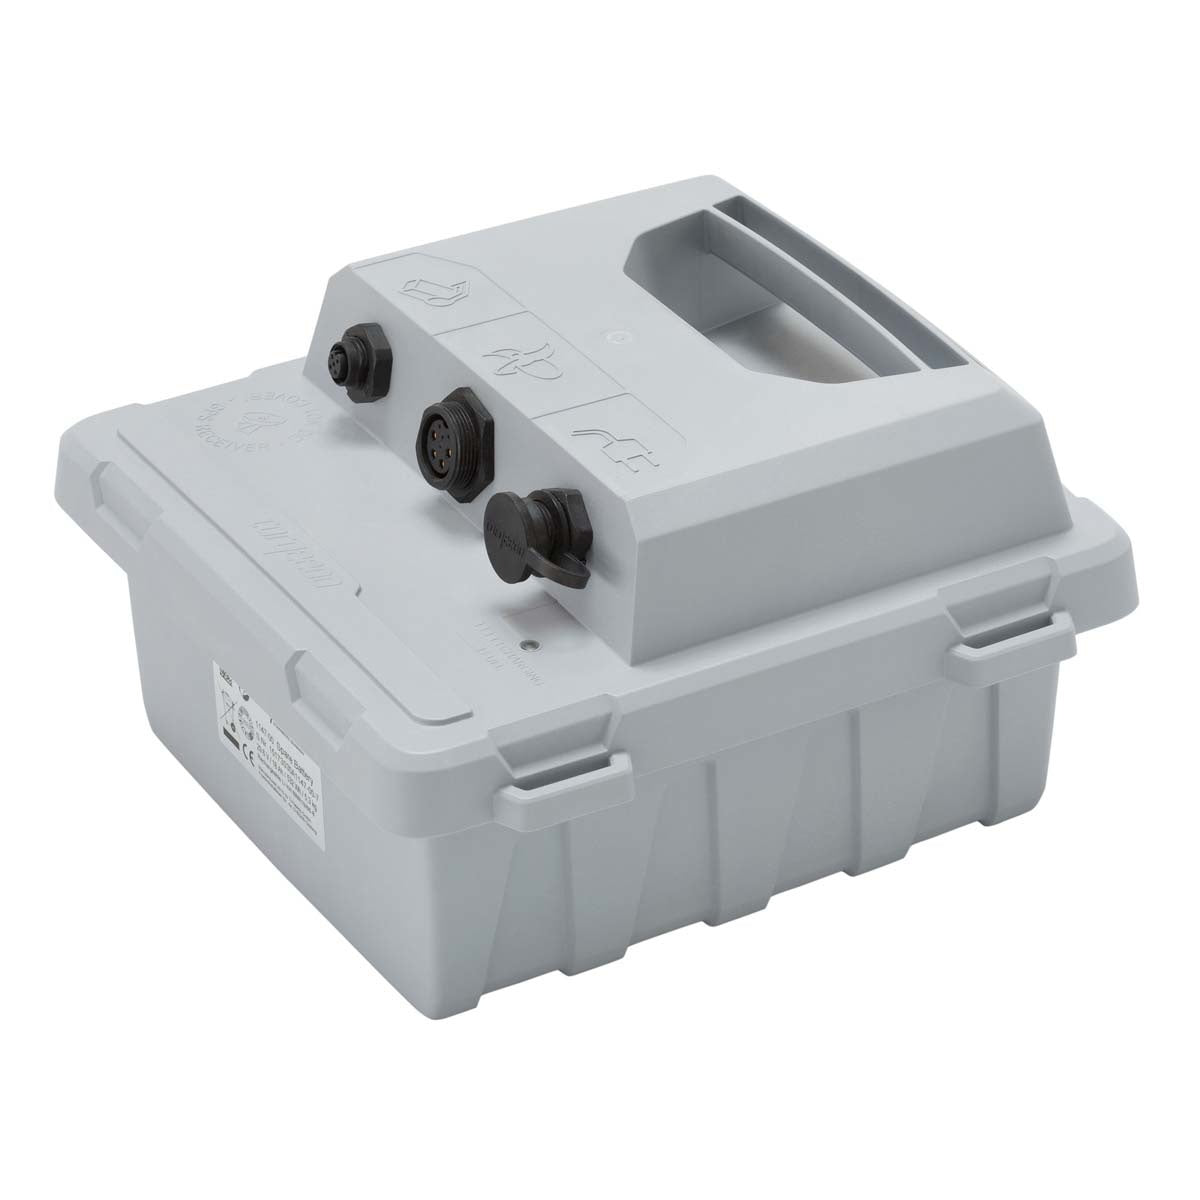 Torqeedo - Ultralight Battery 403/1103 (A/AC) - 915 Watt